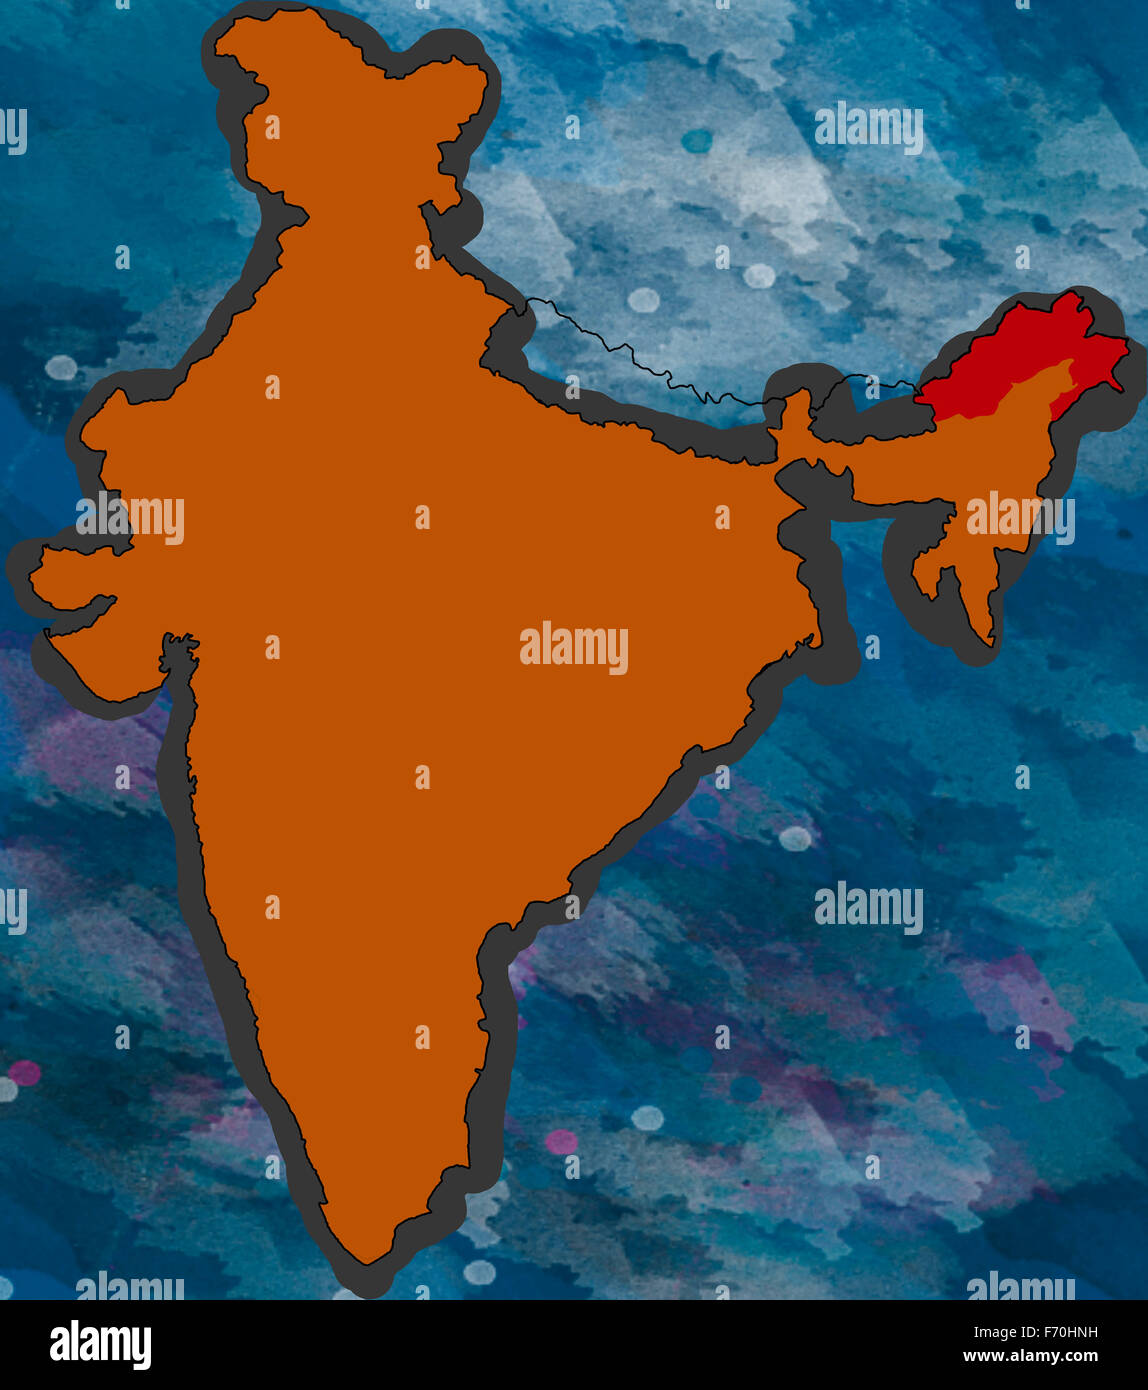 Lage Arunachal Pradesh auf der Karte von Indien, Indien Karte, Indien Karte, Indien Karte, Indien, Karte Asien, Asien Stockfoto